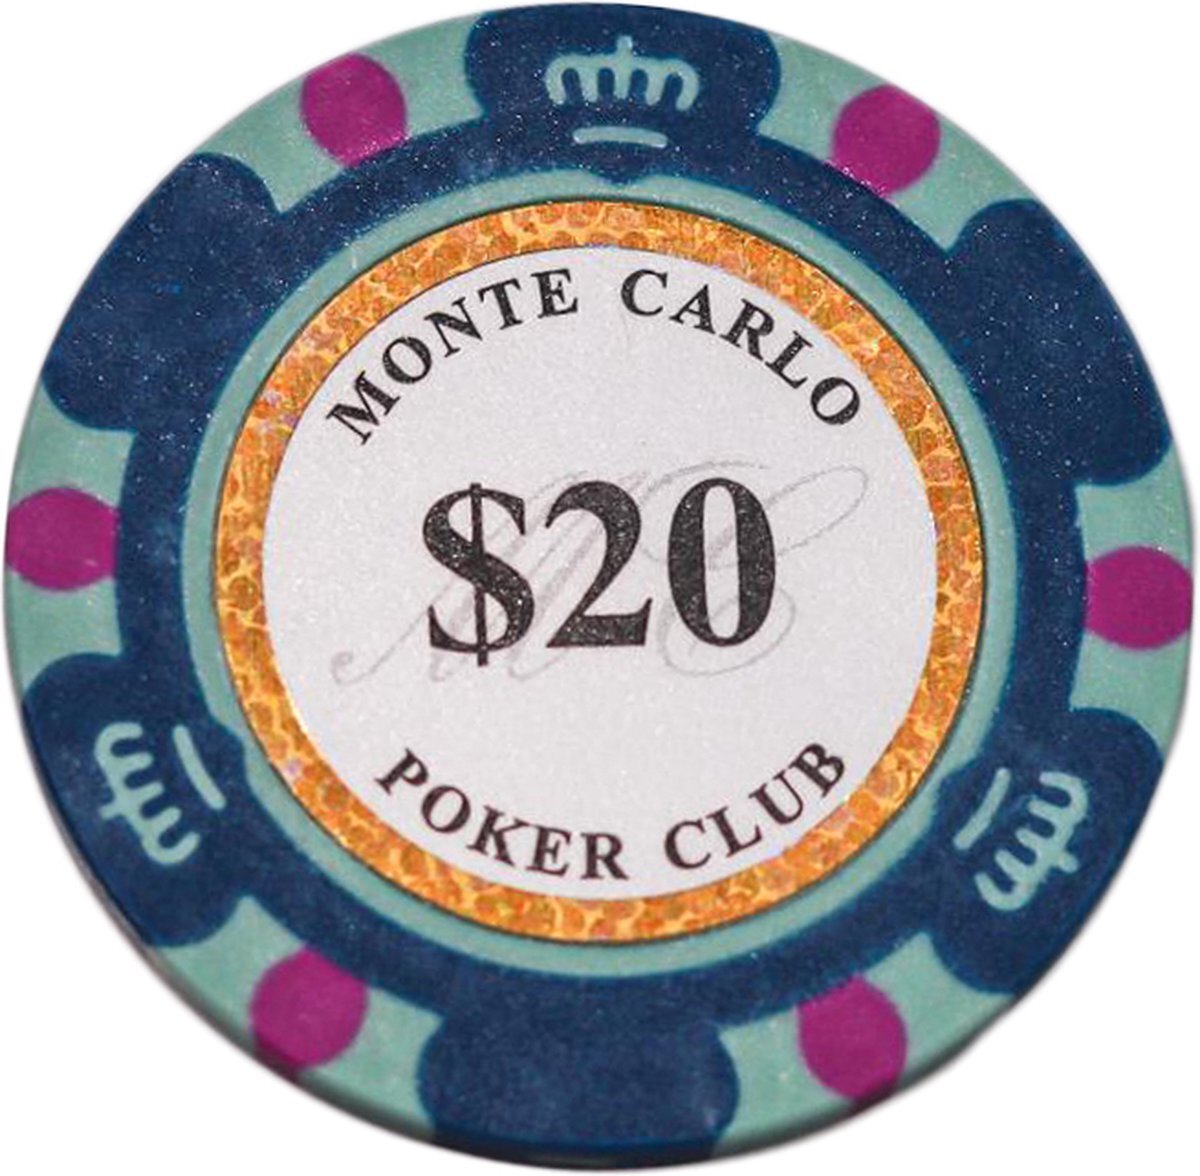 Cave & Garden Poker chips - Poker - Pokerset - Poker chip met waarde 20 - Monte Carlo poker chip - Fiches - Poker fiches - Poker chip - Klei fiches -